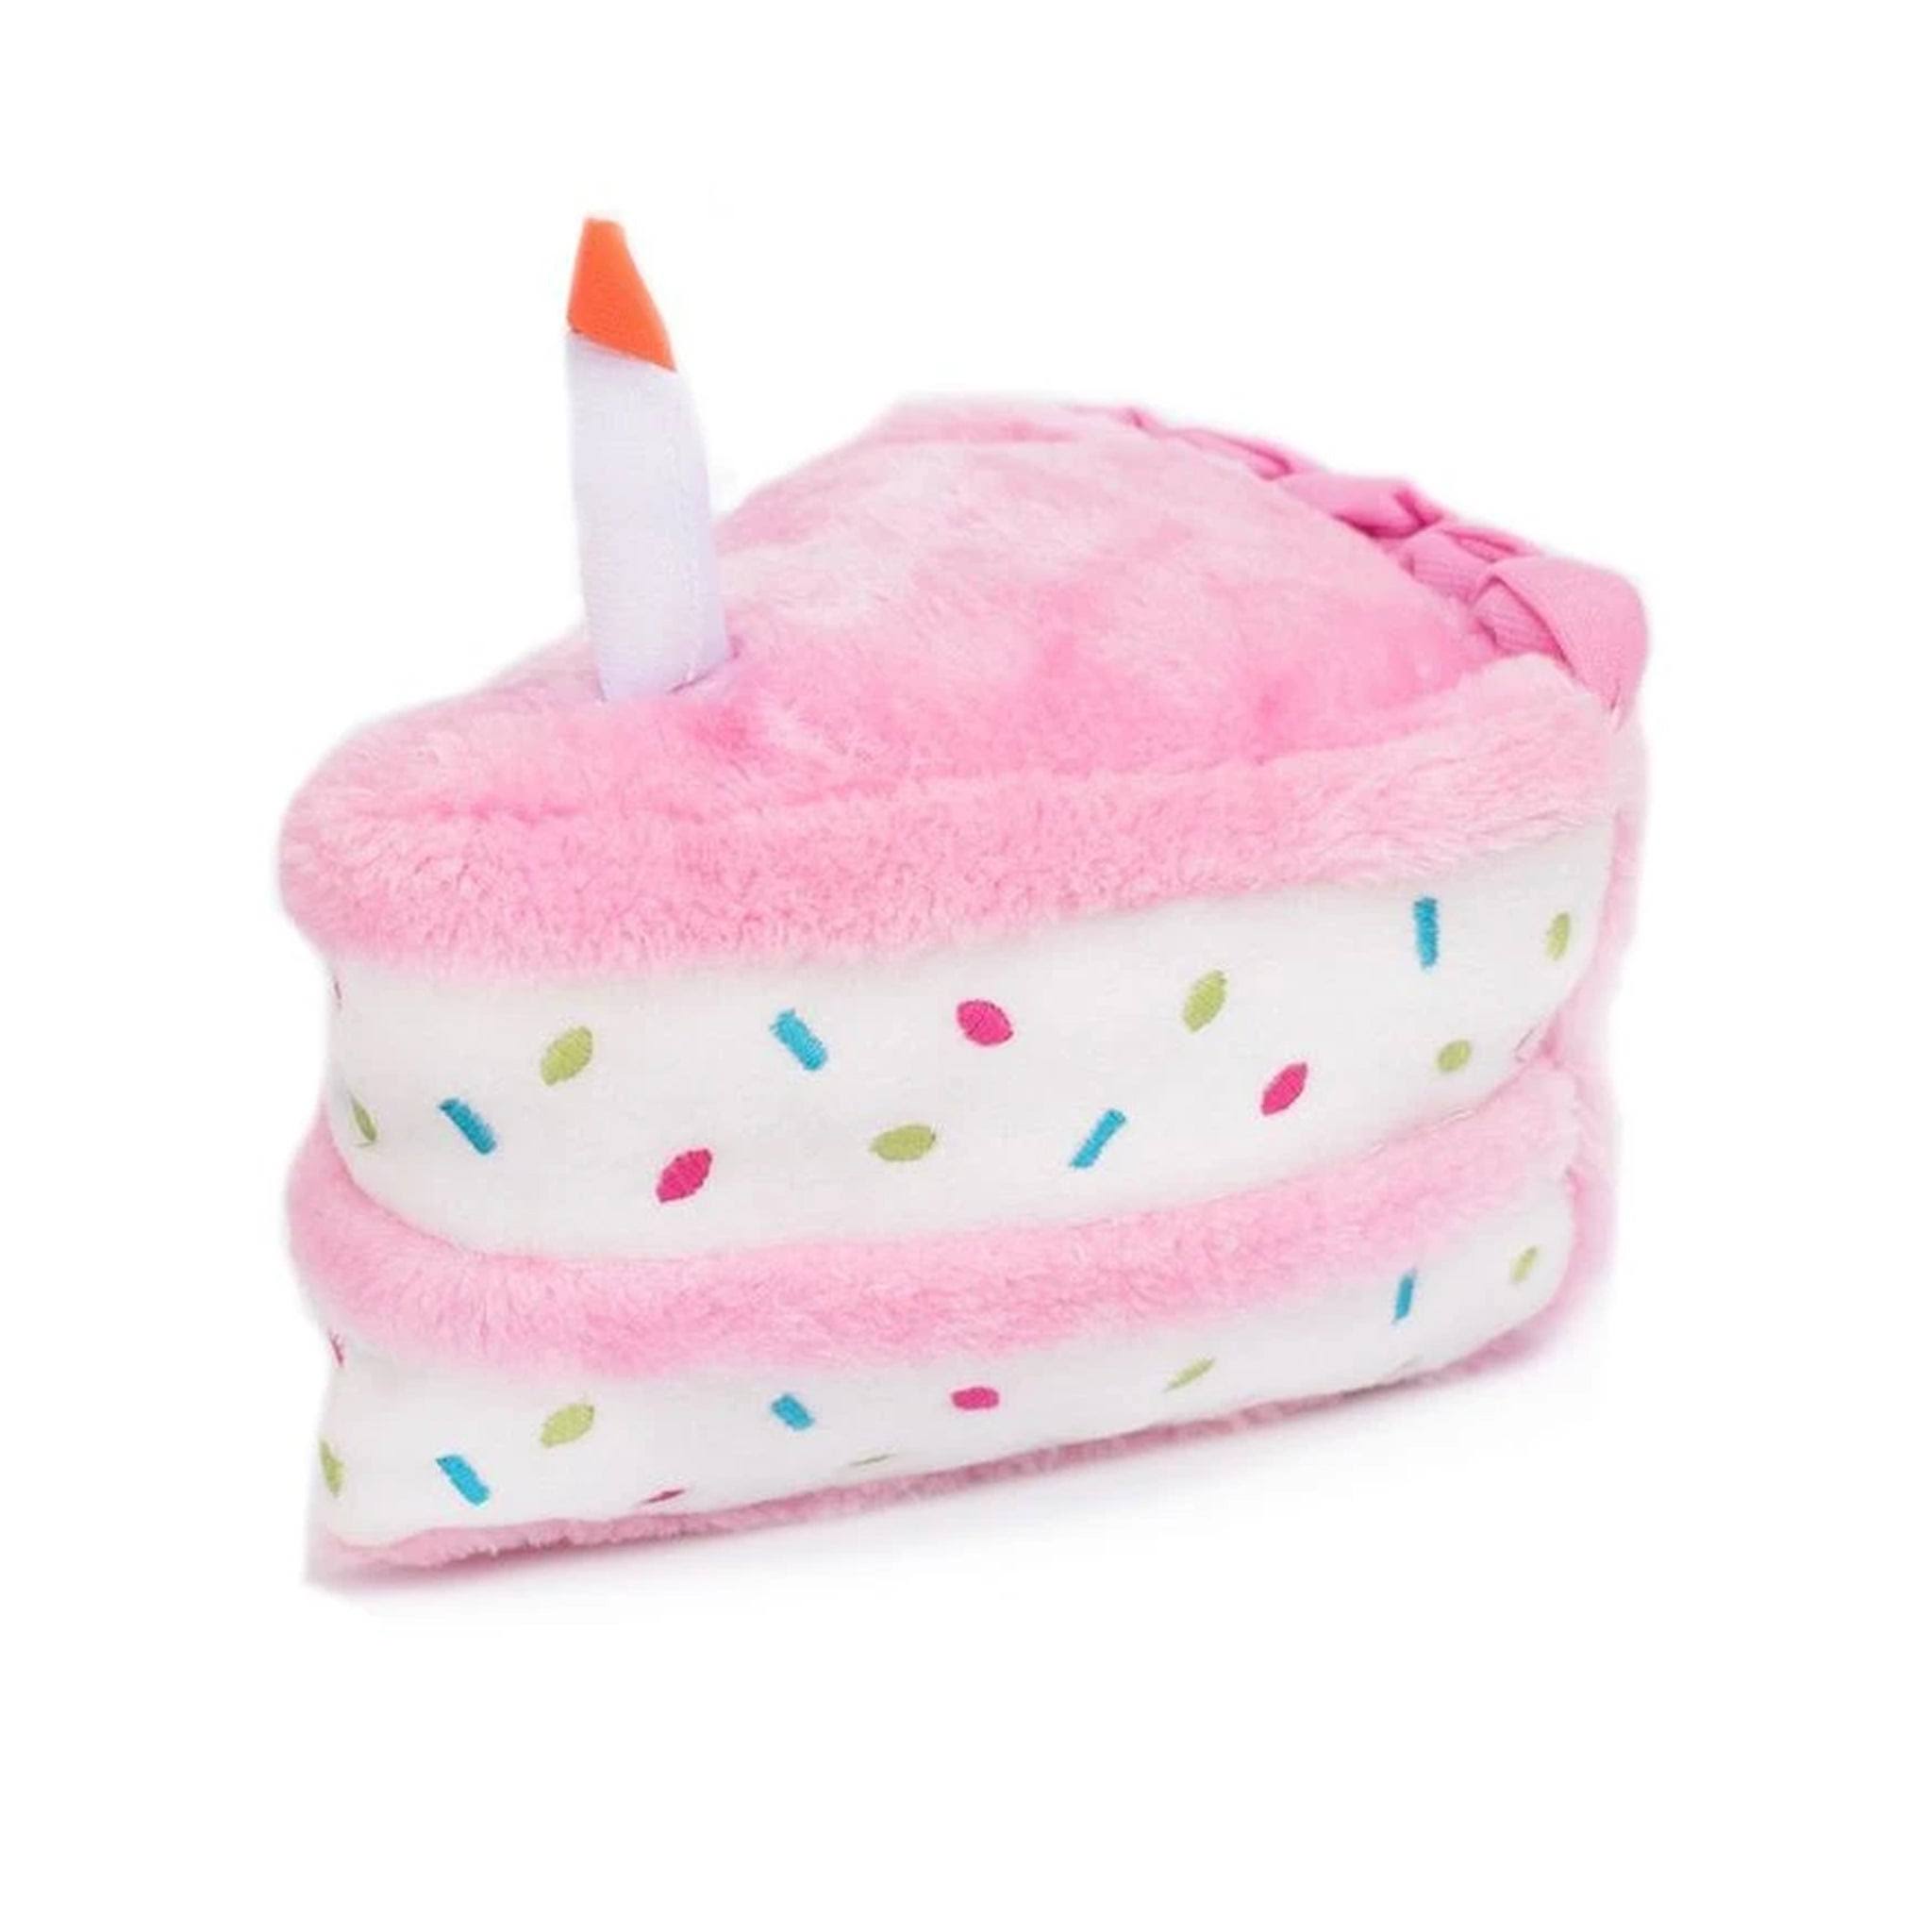 Zippy Paws 817013 Birthday Cake Dog Toy, Pink